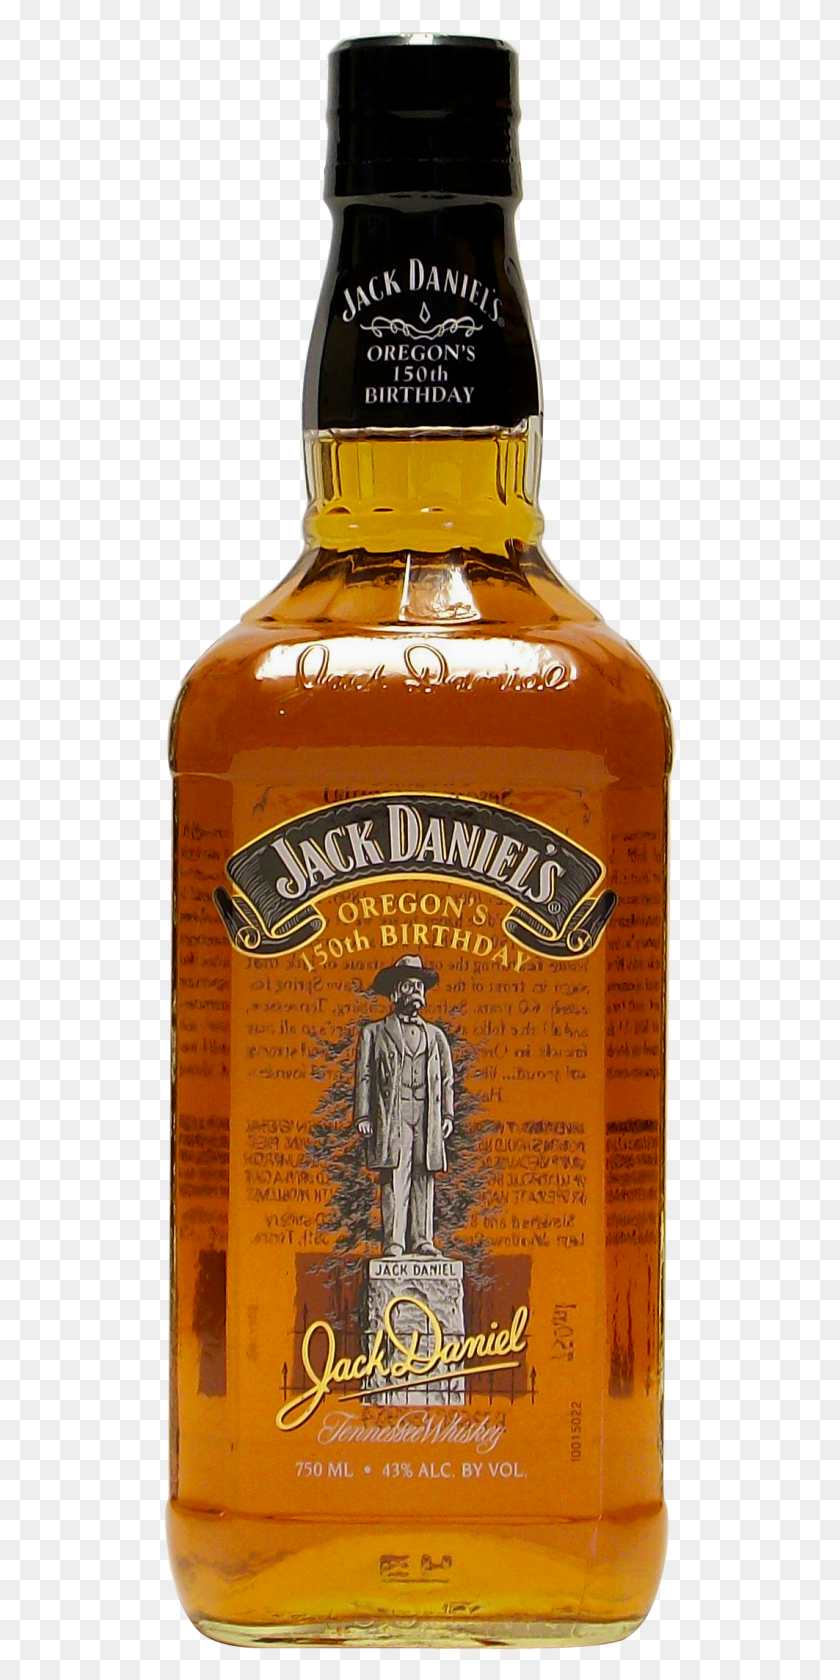 513x1620 Esta Hermosa Botella De 750 Ml Presenta Una Imagen De La Botella De 150 Cumpleaños De Jack Daniels Oregon, Licor, Alcohol, Bebida Hd Png Descargar